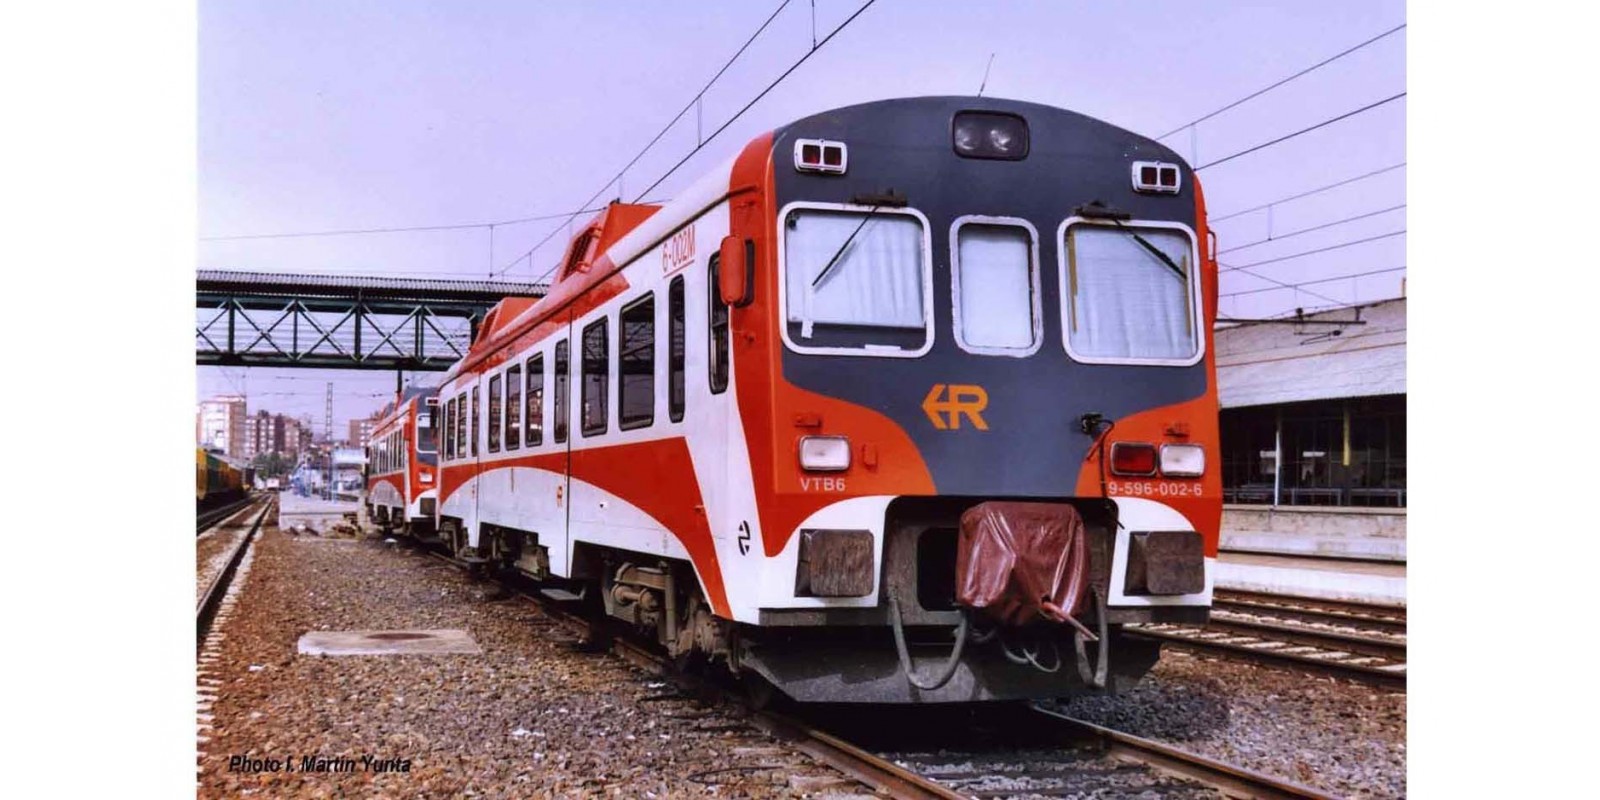 ET2502A RENFE, diesel railcar class 596 "Regionales R2", 9-596-002-6, period V